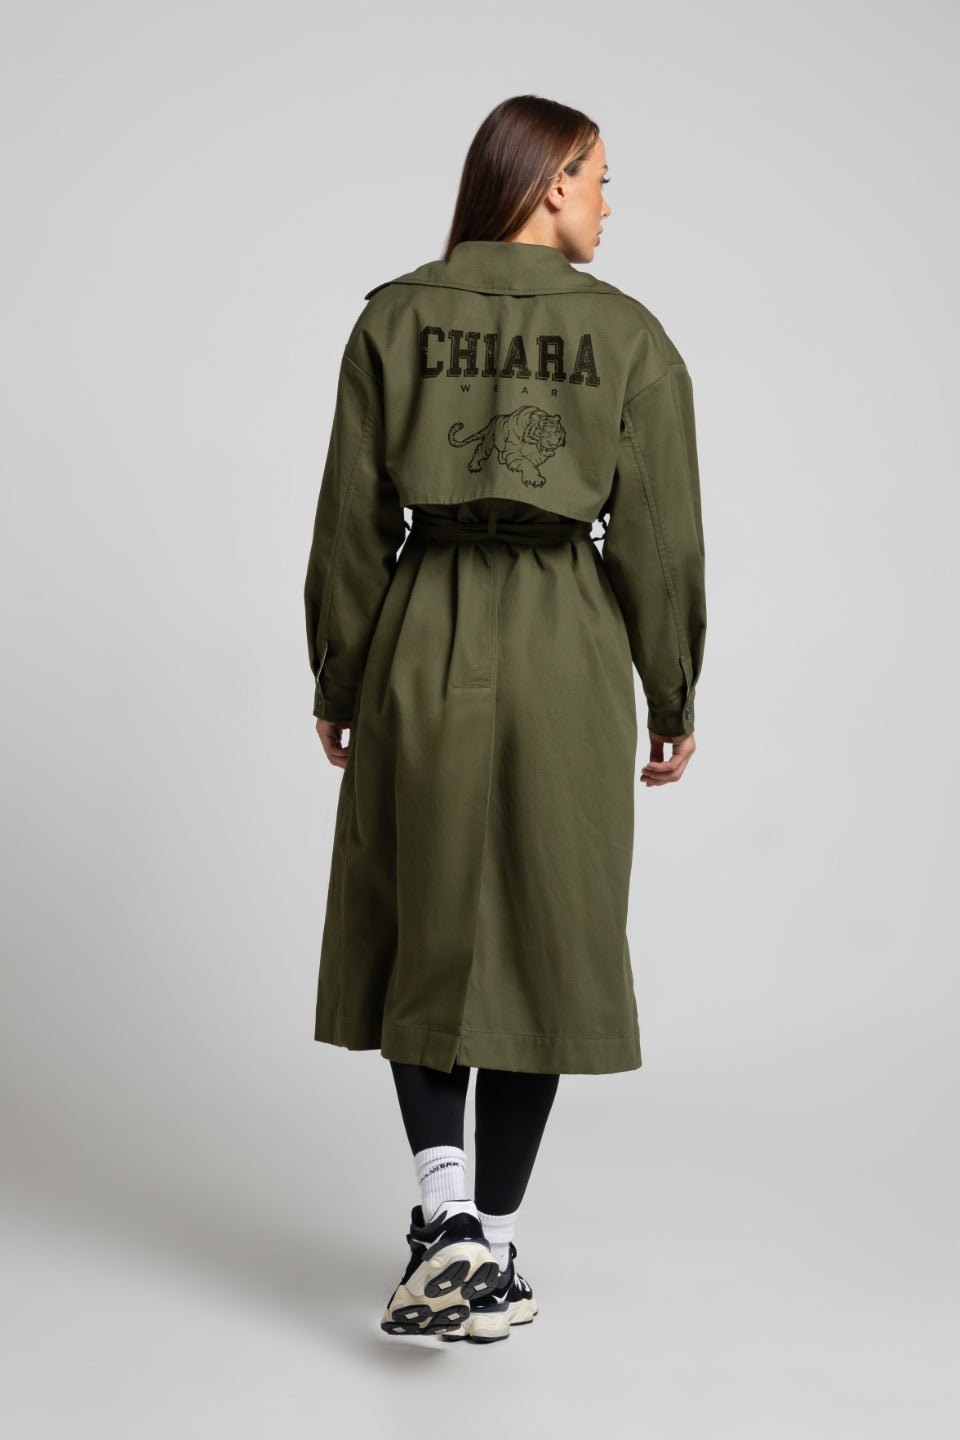 Płaszcz trencz nadruk CHIARA - khaki - Chiara Wear